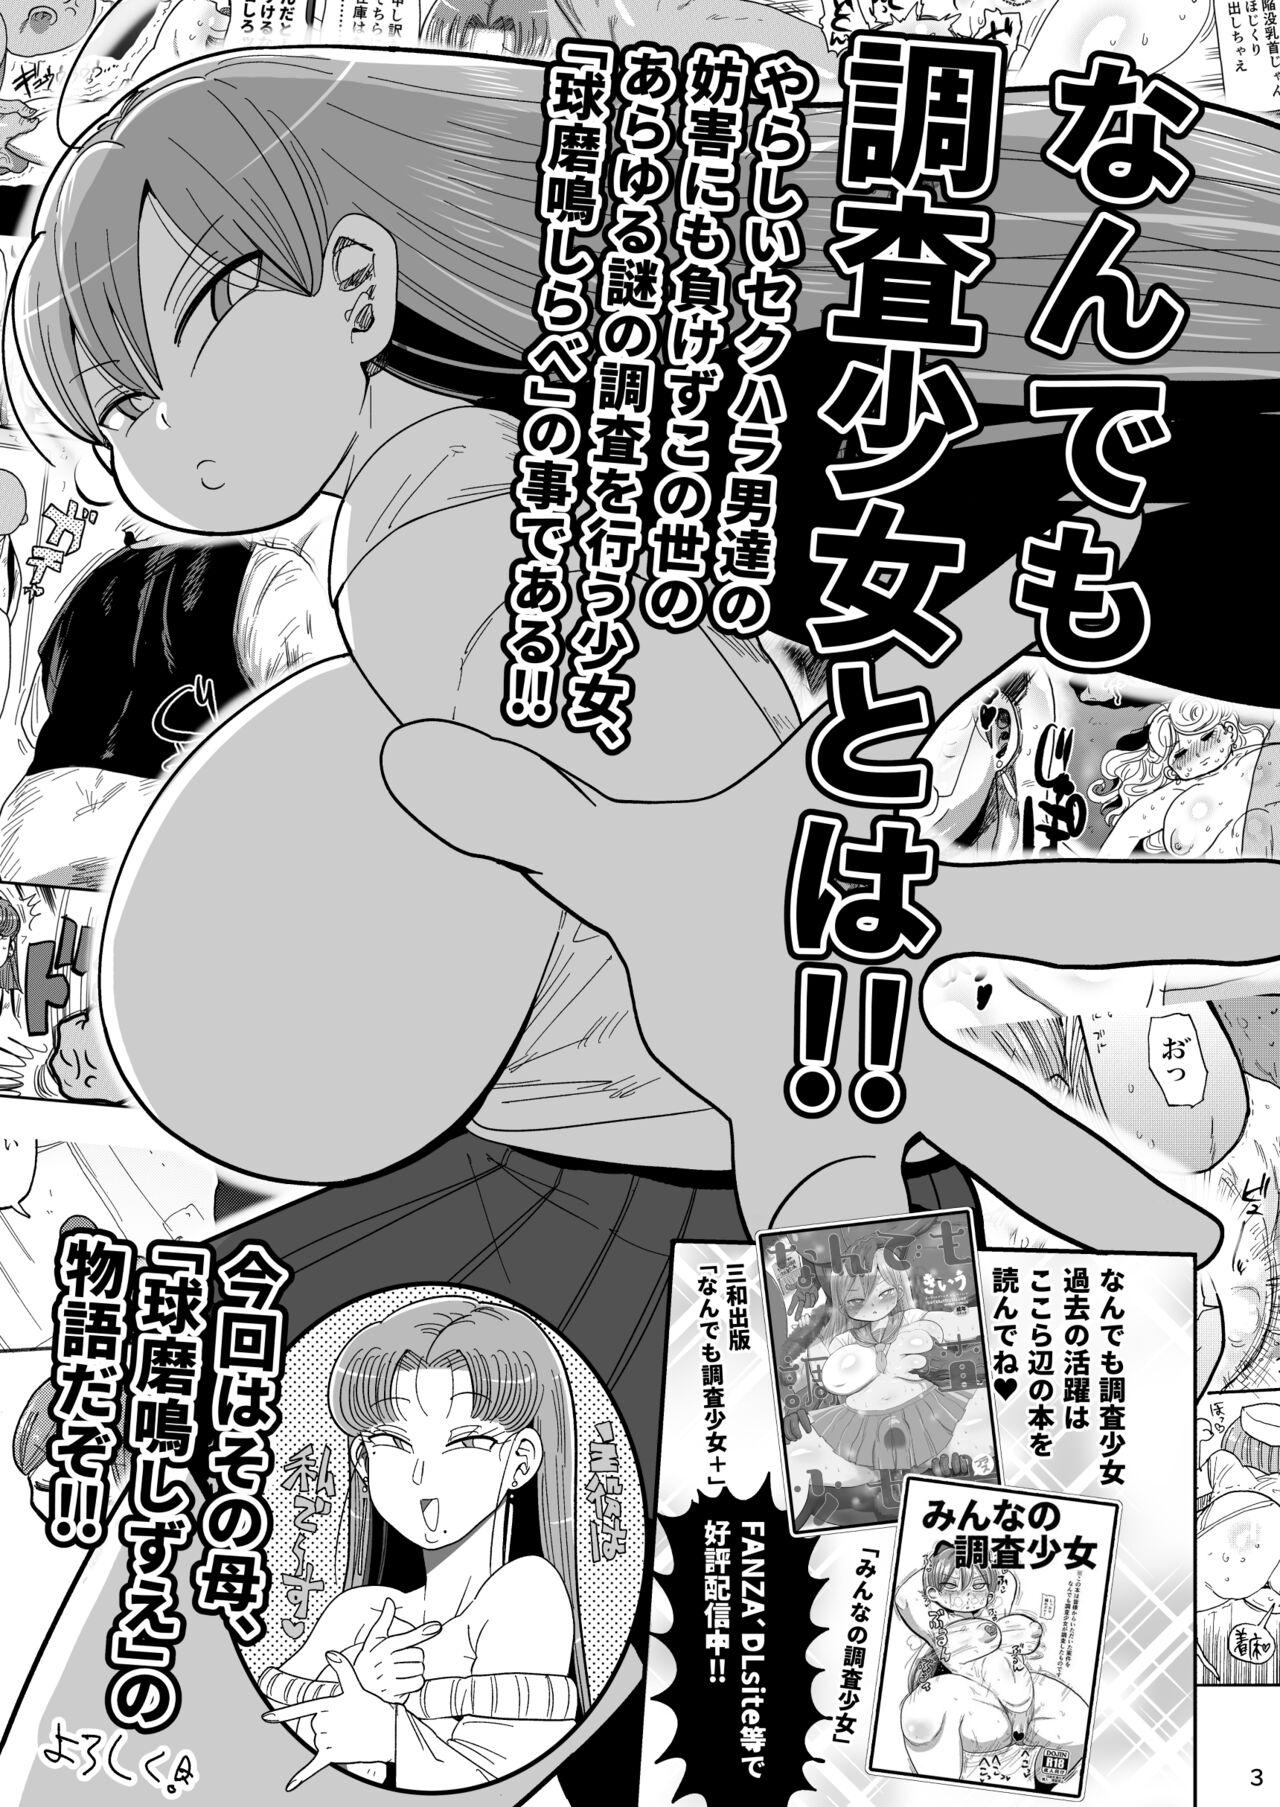 Lick Nandemo Chousa Mama Kuma Shizue ha TEIKO ga dekinai - Original Innocent - Page 2